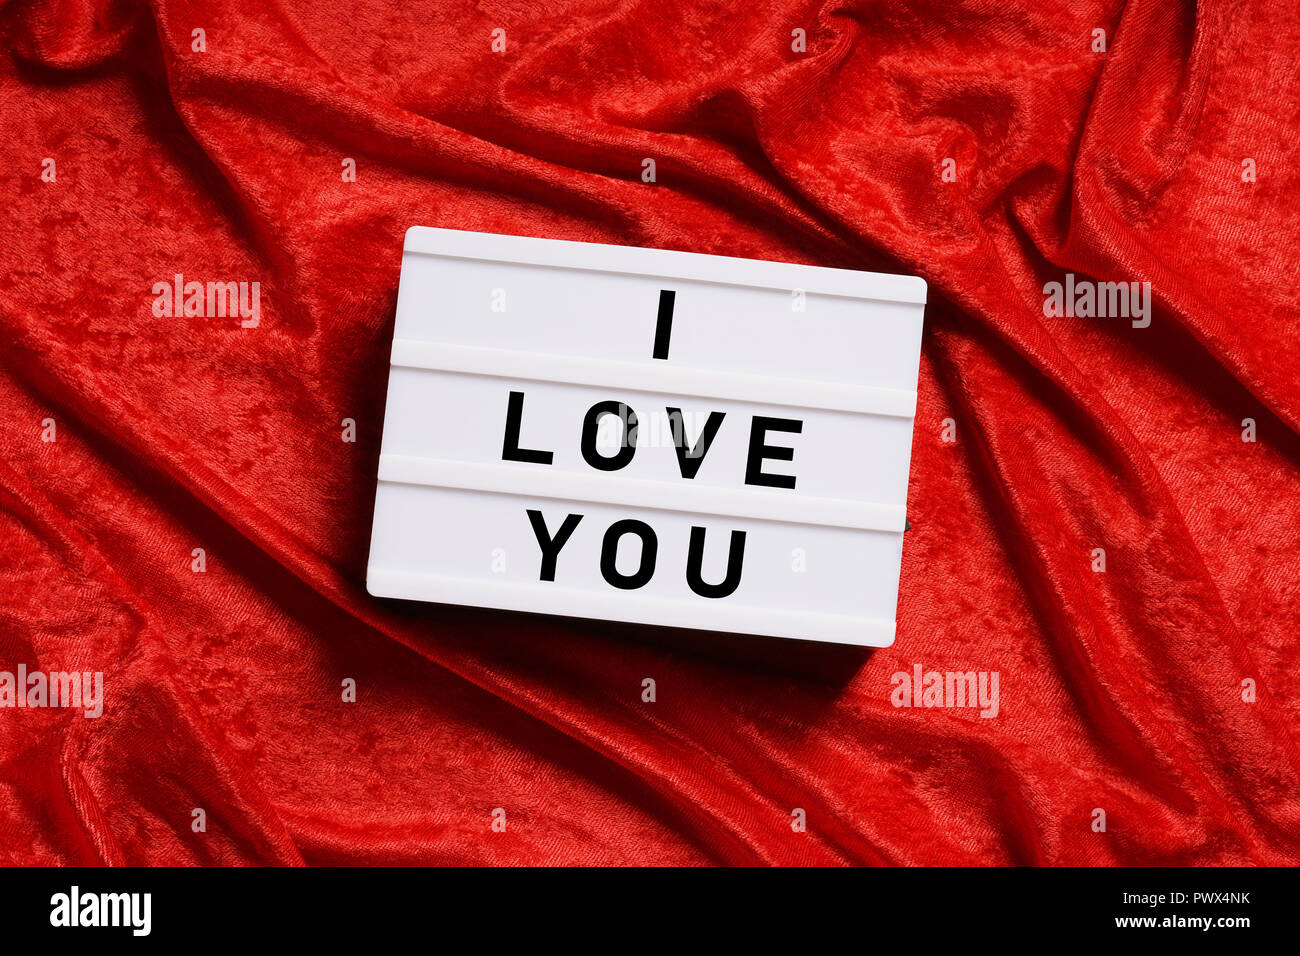 I love you text on lightbox or light box sign on red velvet background Stock Photo